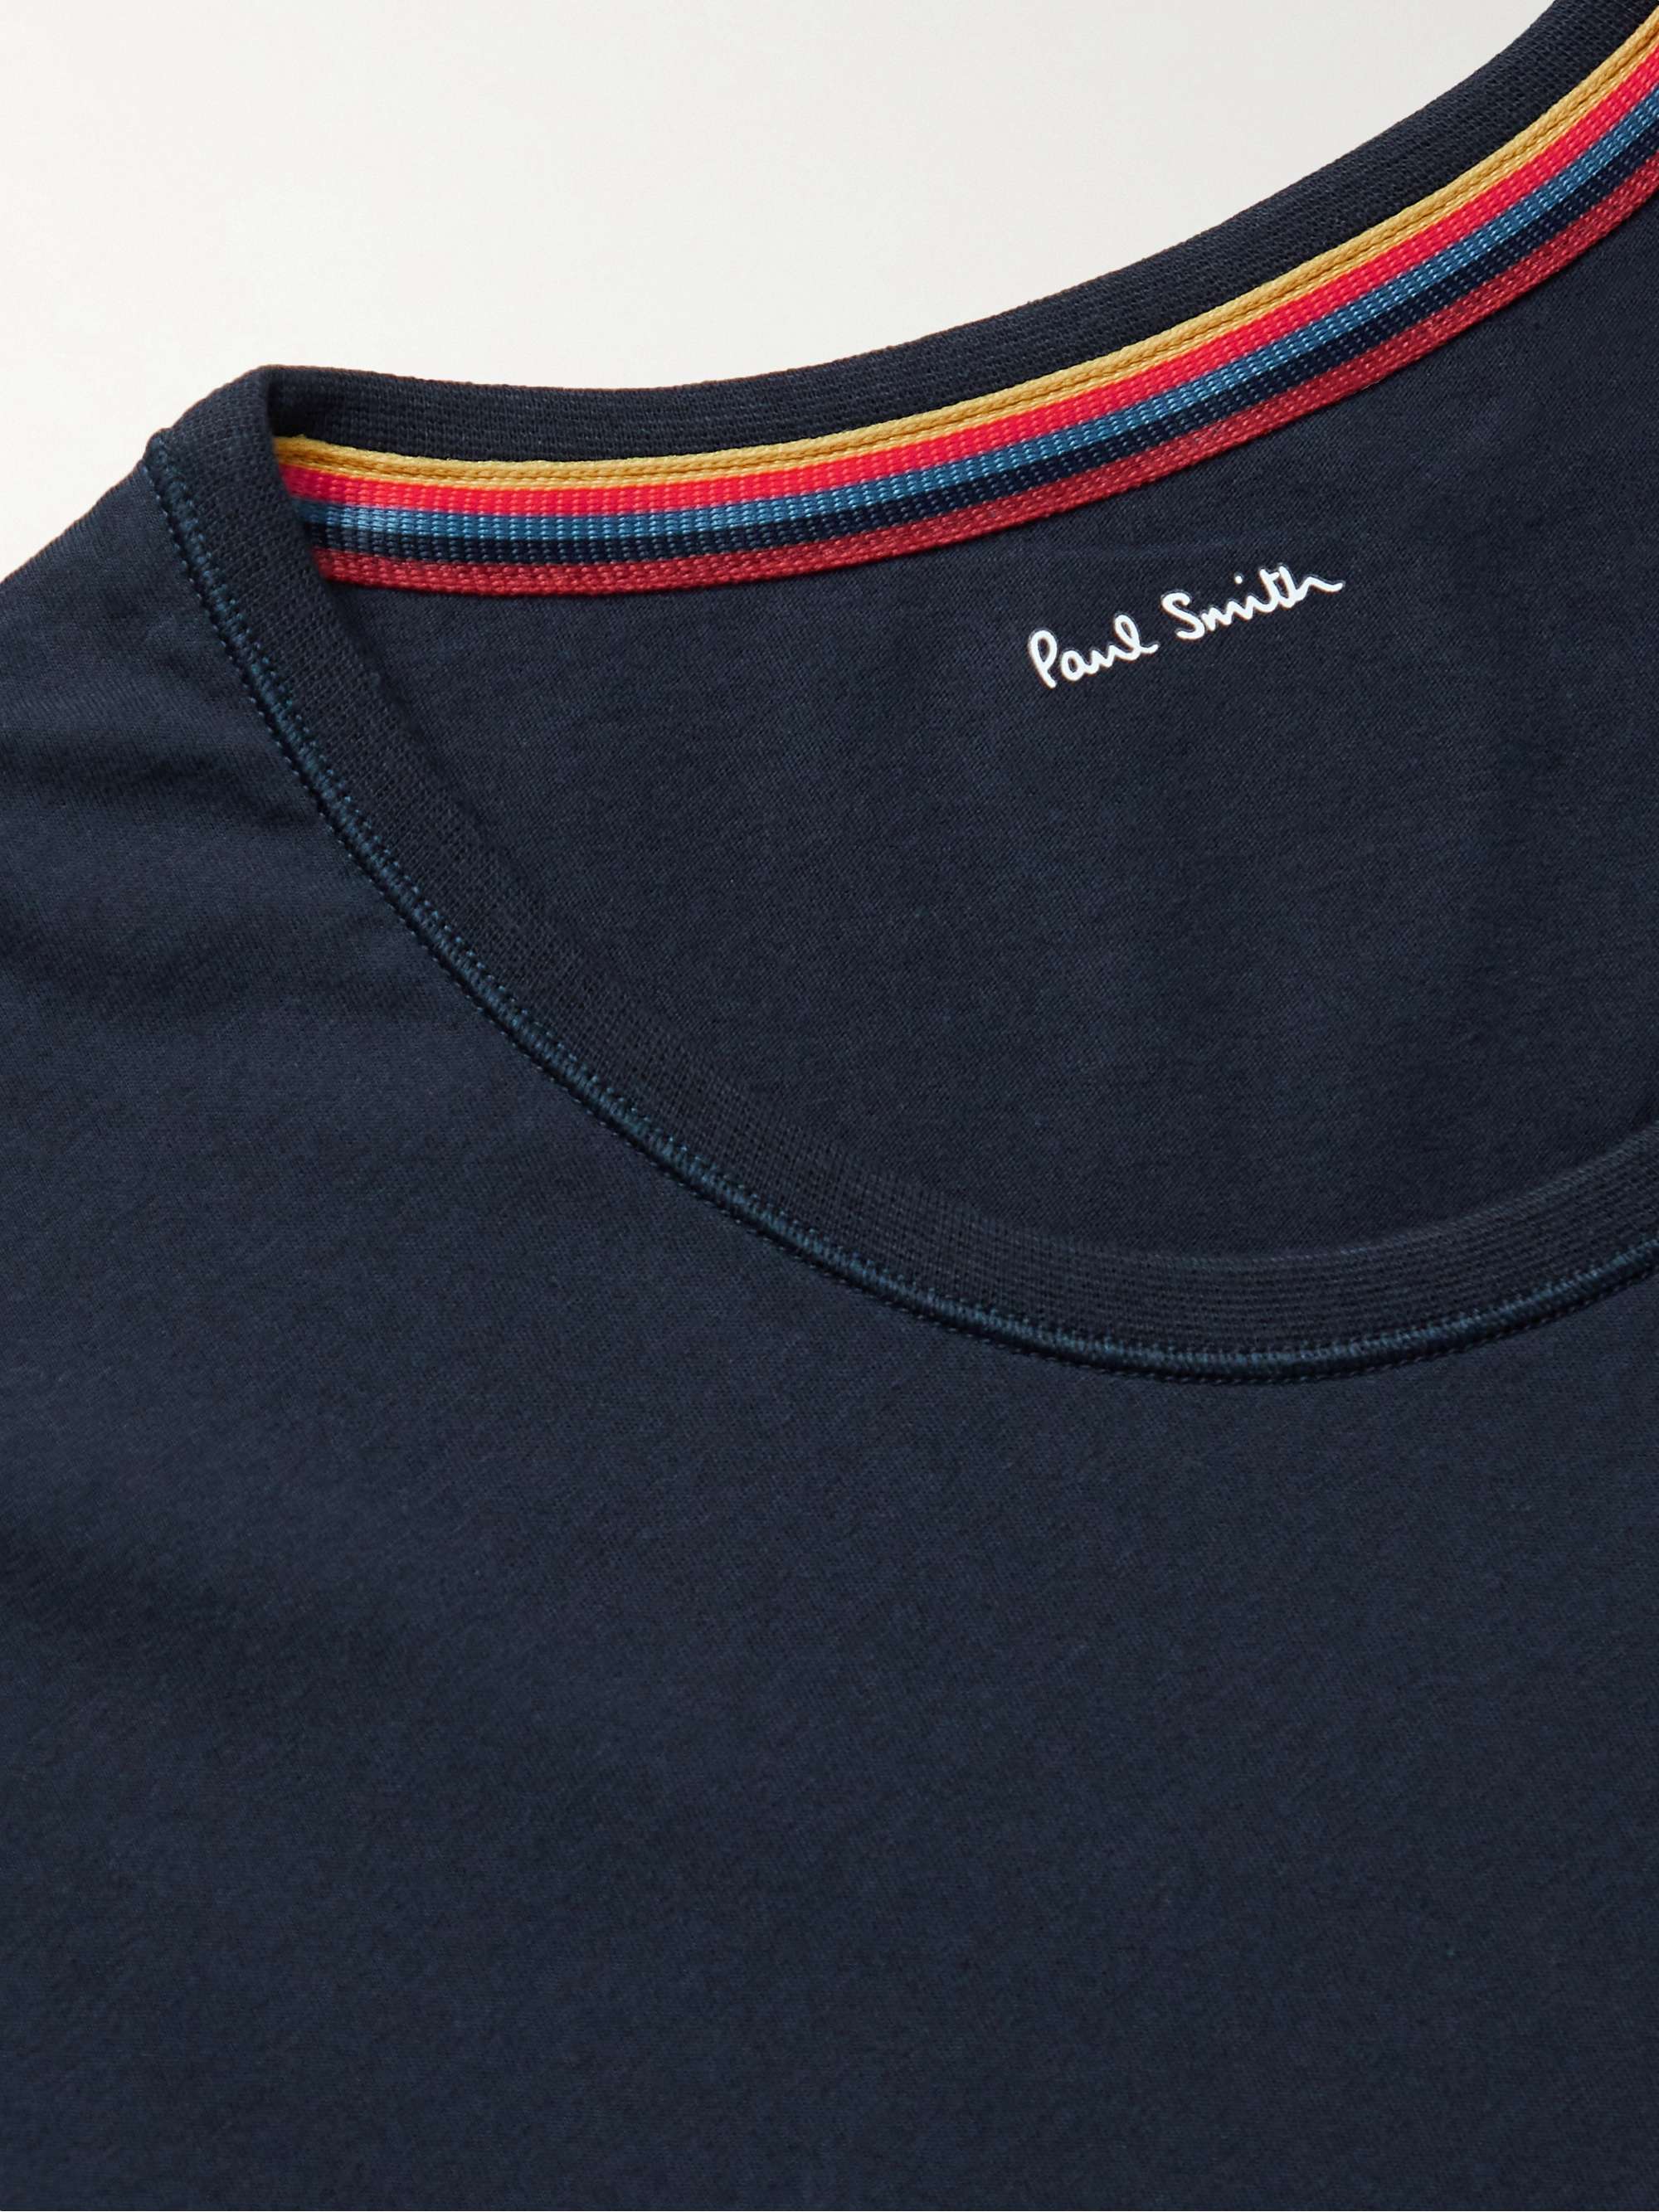 PAUL SMITH Slim-Fit Logo-Appliquéd Cotton-Jersey T-Shirt